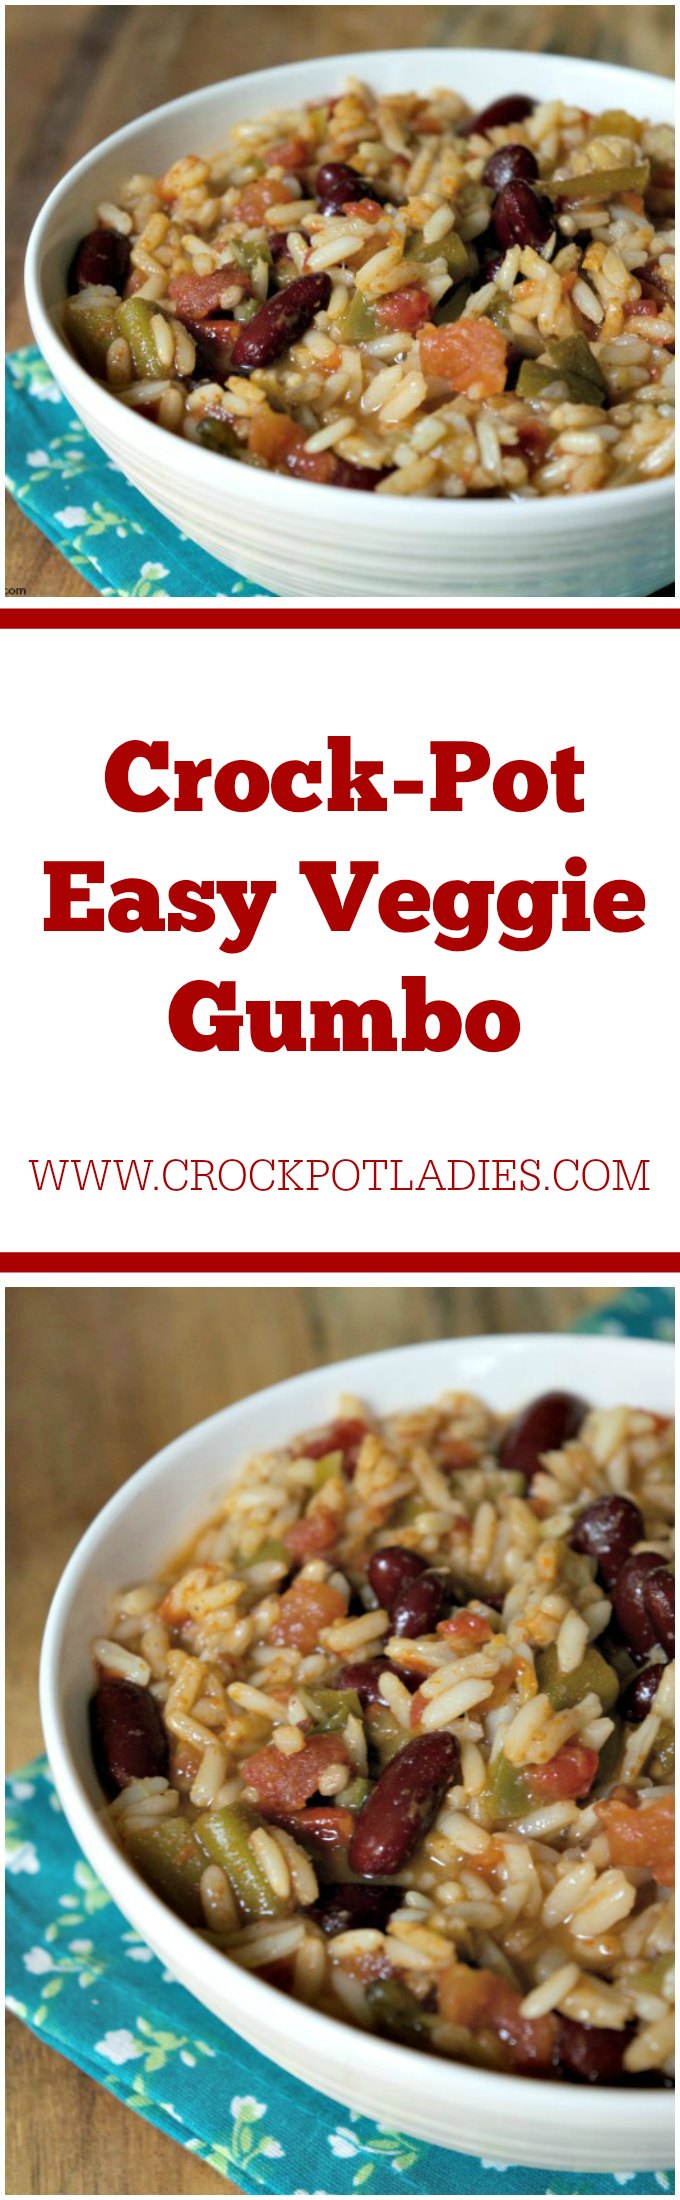 Crock-Pot Easy Veggie Gumbo